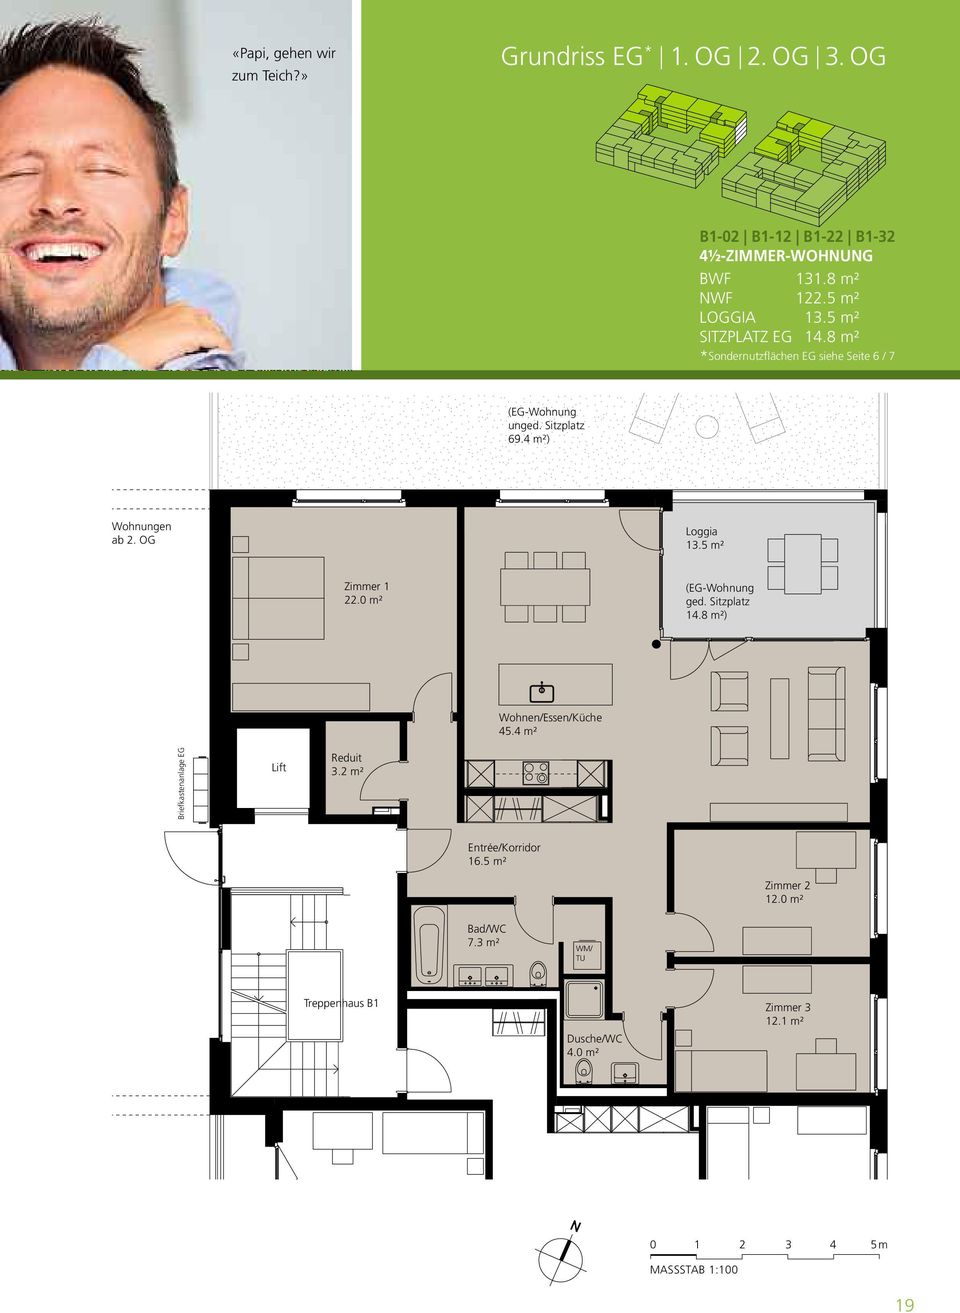 OG Loggia 13.5 m² Zimmer 1 22.0 m² (EG-Wohnung ged. Sitzplatz 14.8 m²) Wohnen/Essen/Küche 45.4 m² Briefkastenanlage EG Lift Reduit 3.